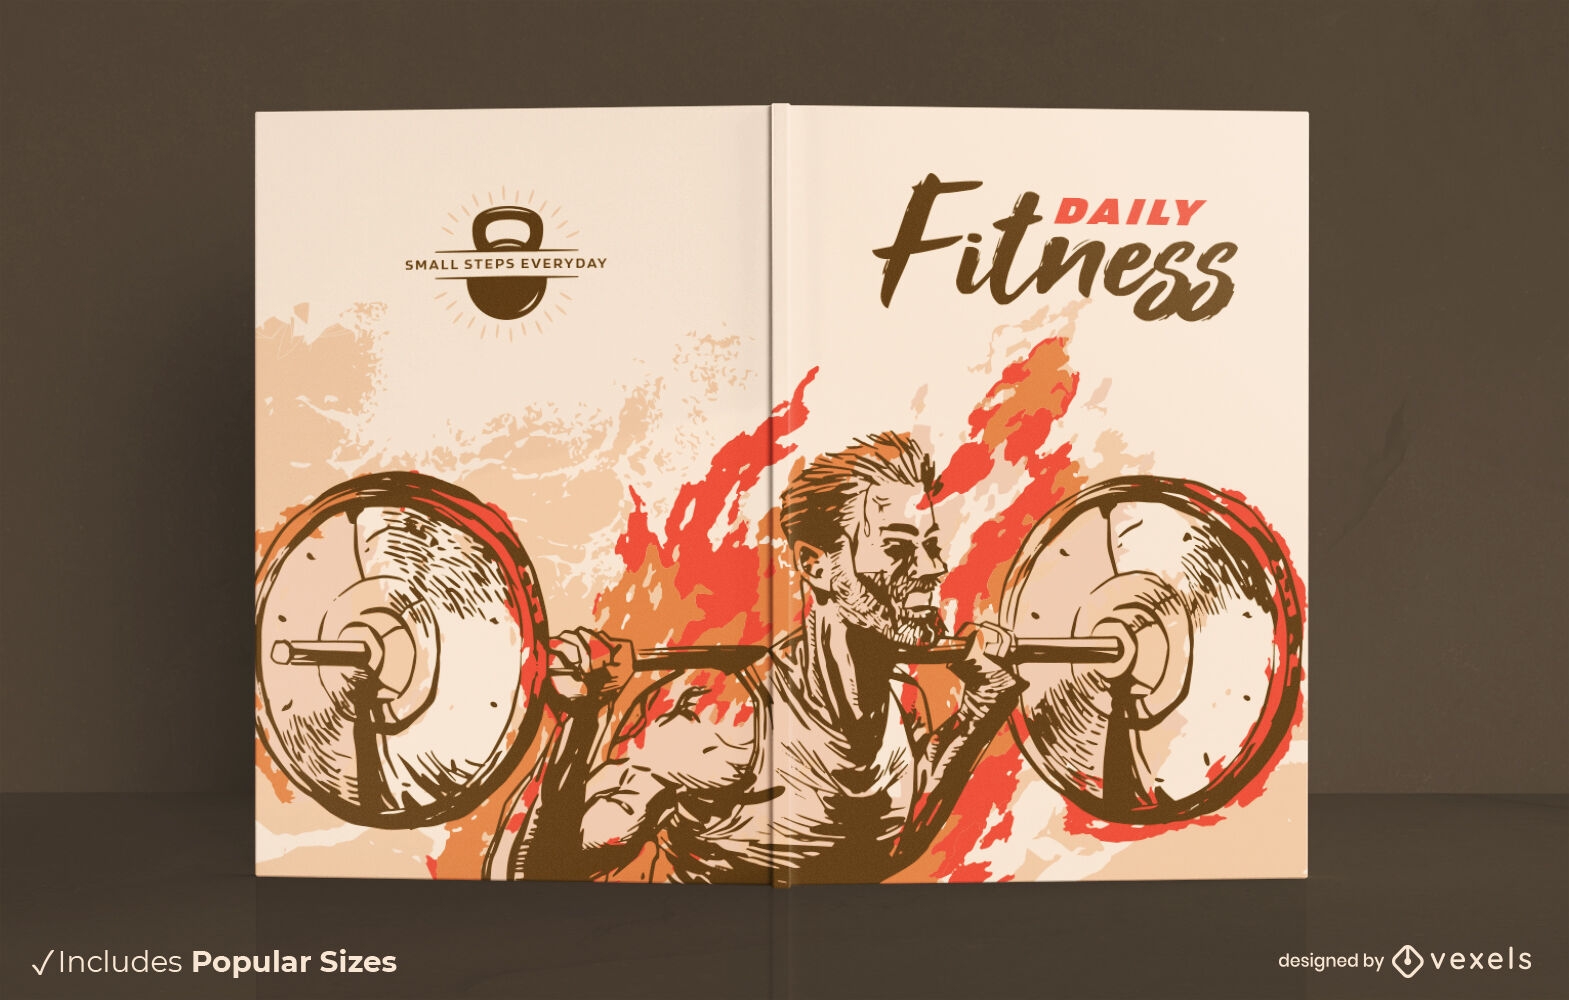 Excelente design de capa de livro de fitness di?rio